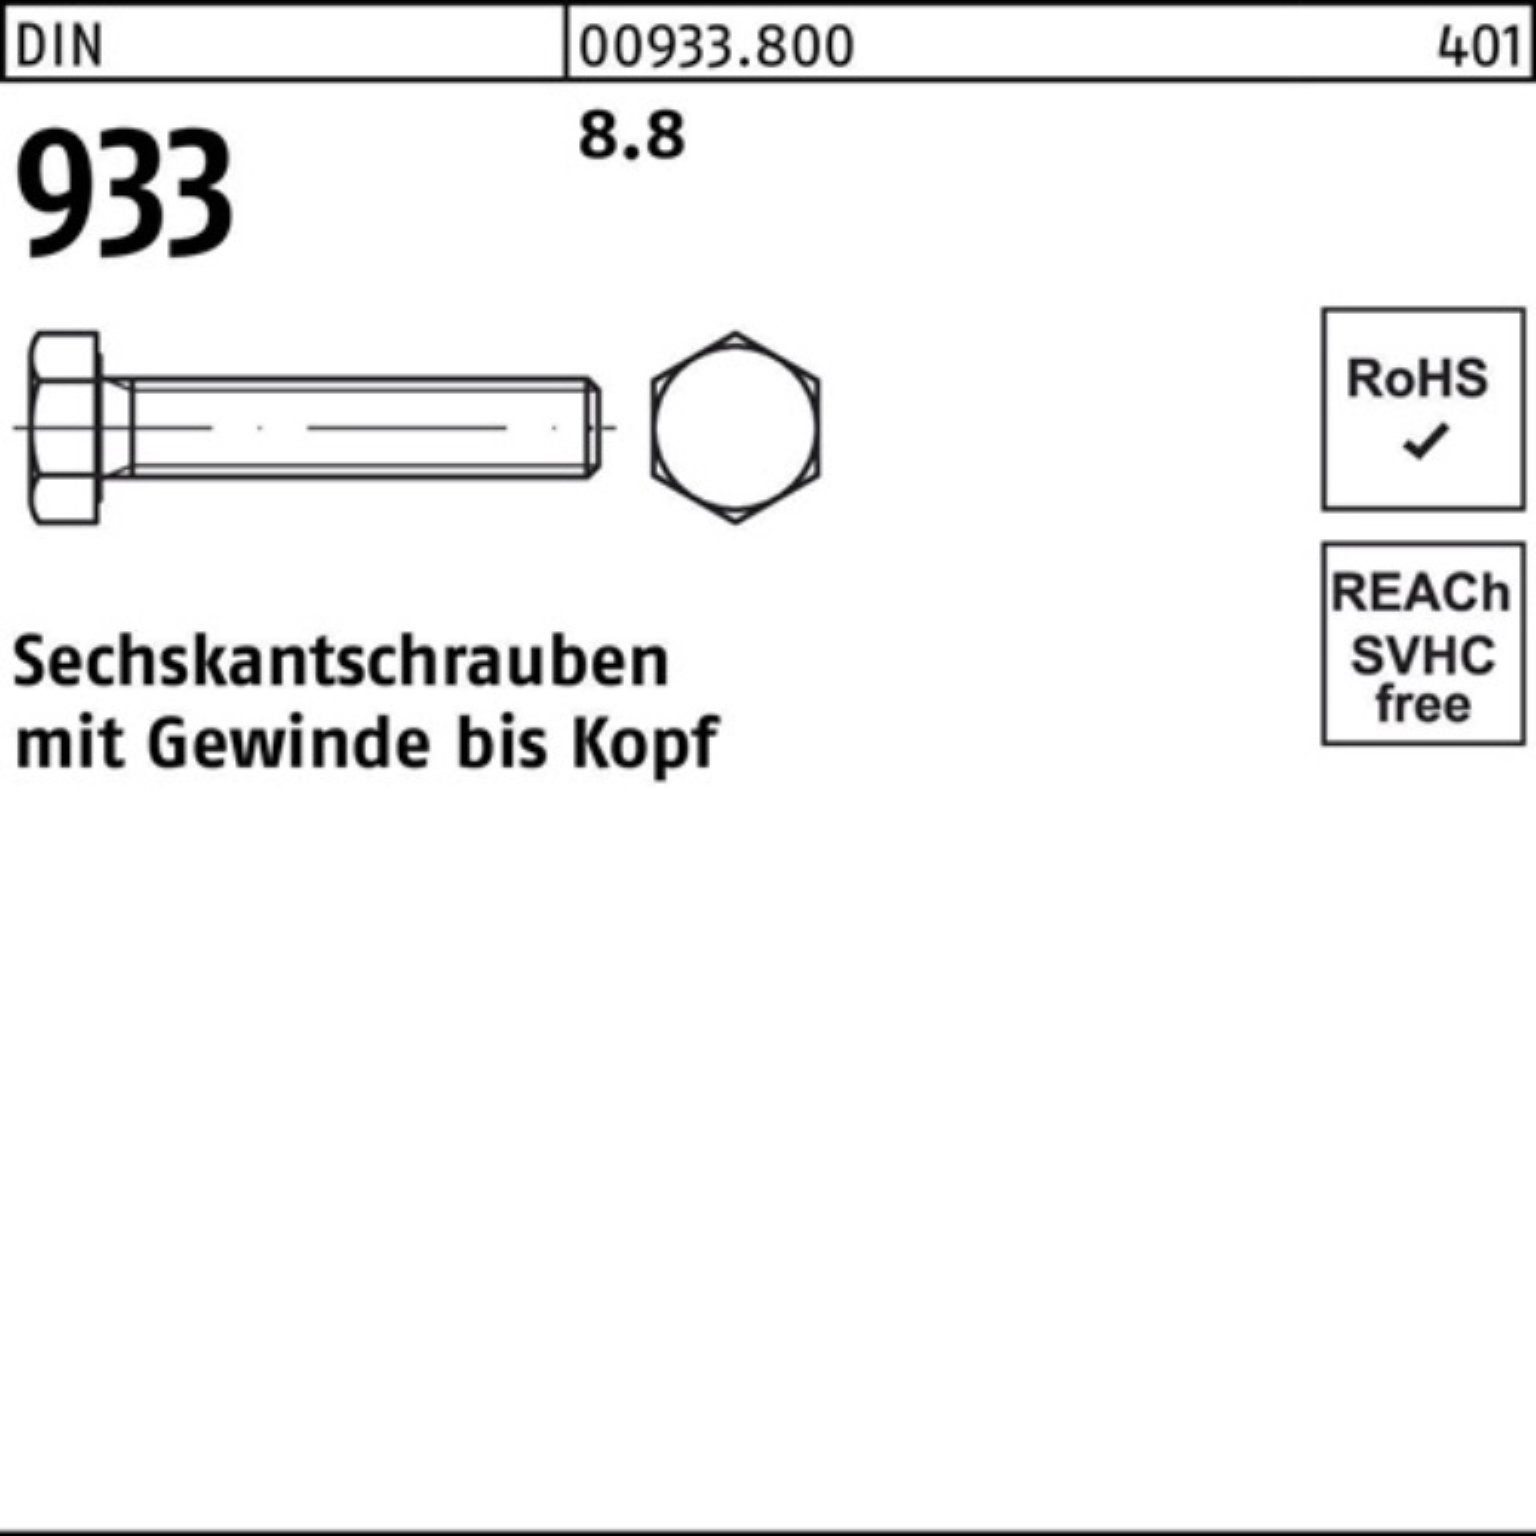 Pack Sechskantschraube M14x 933 100er 130 VG 933 Reyher Stück 8.8 DIN 50 Sechskantschraube DIN